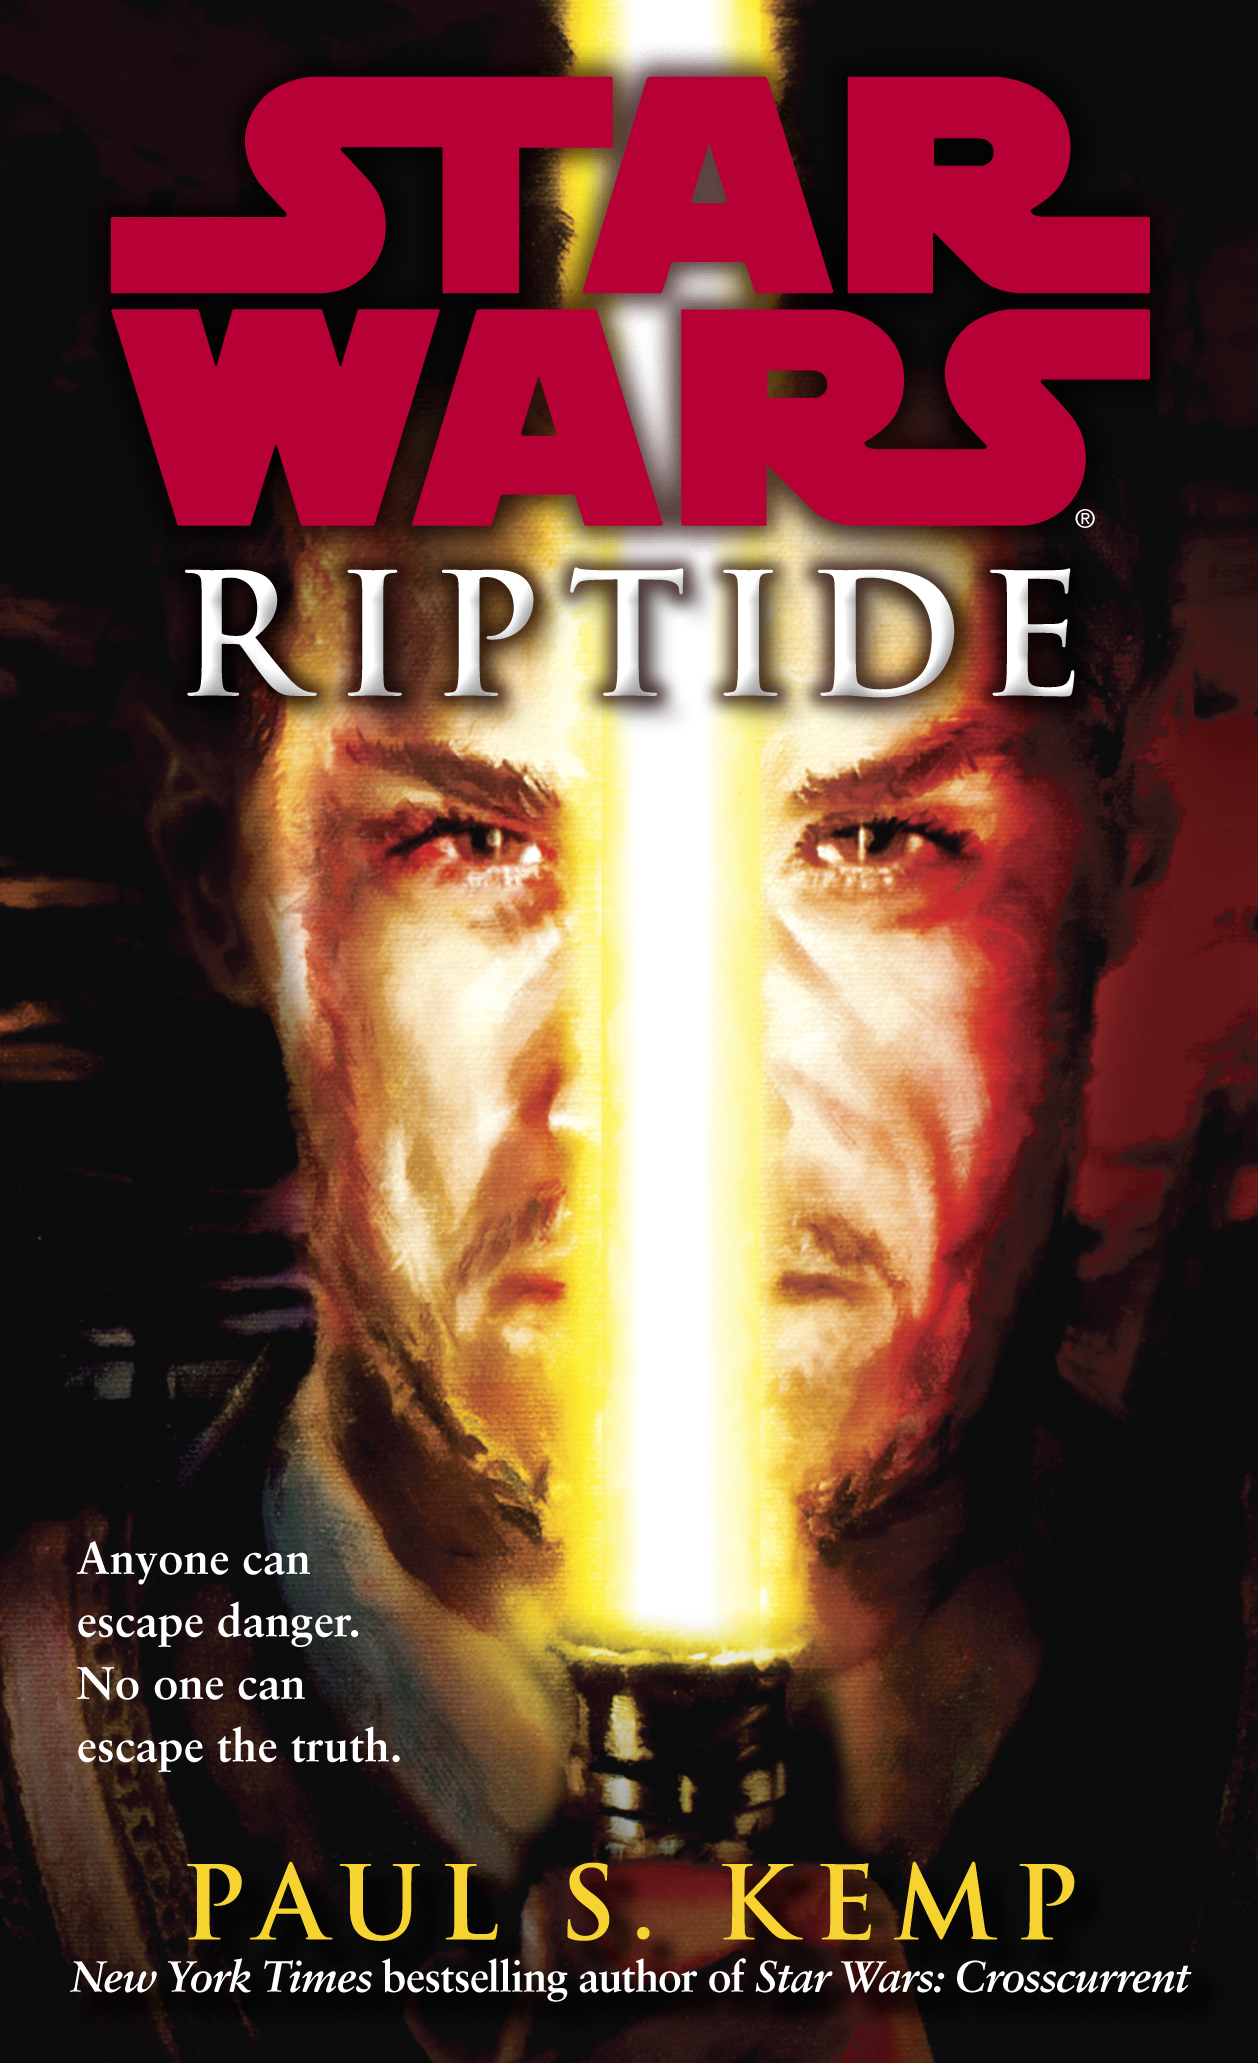 Star Wars: Riptide (novel)